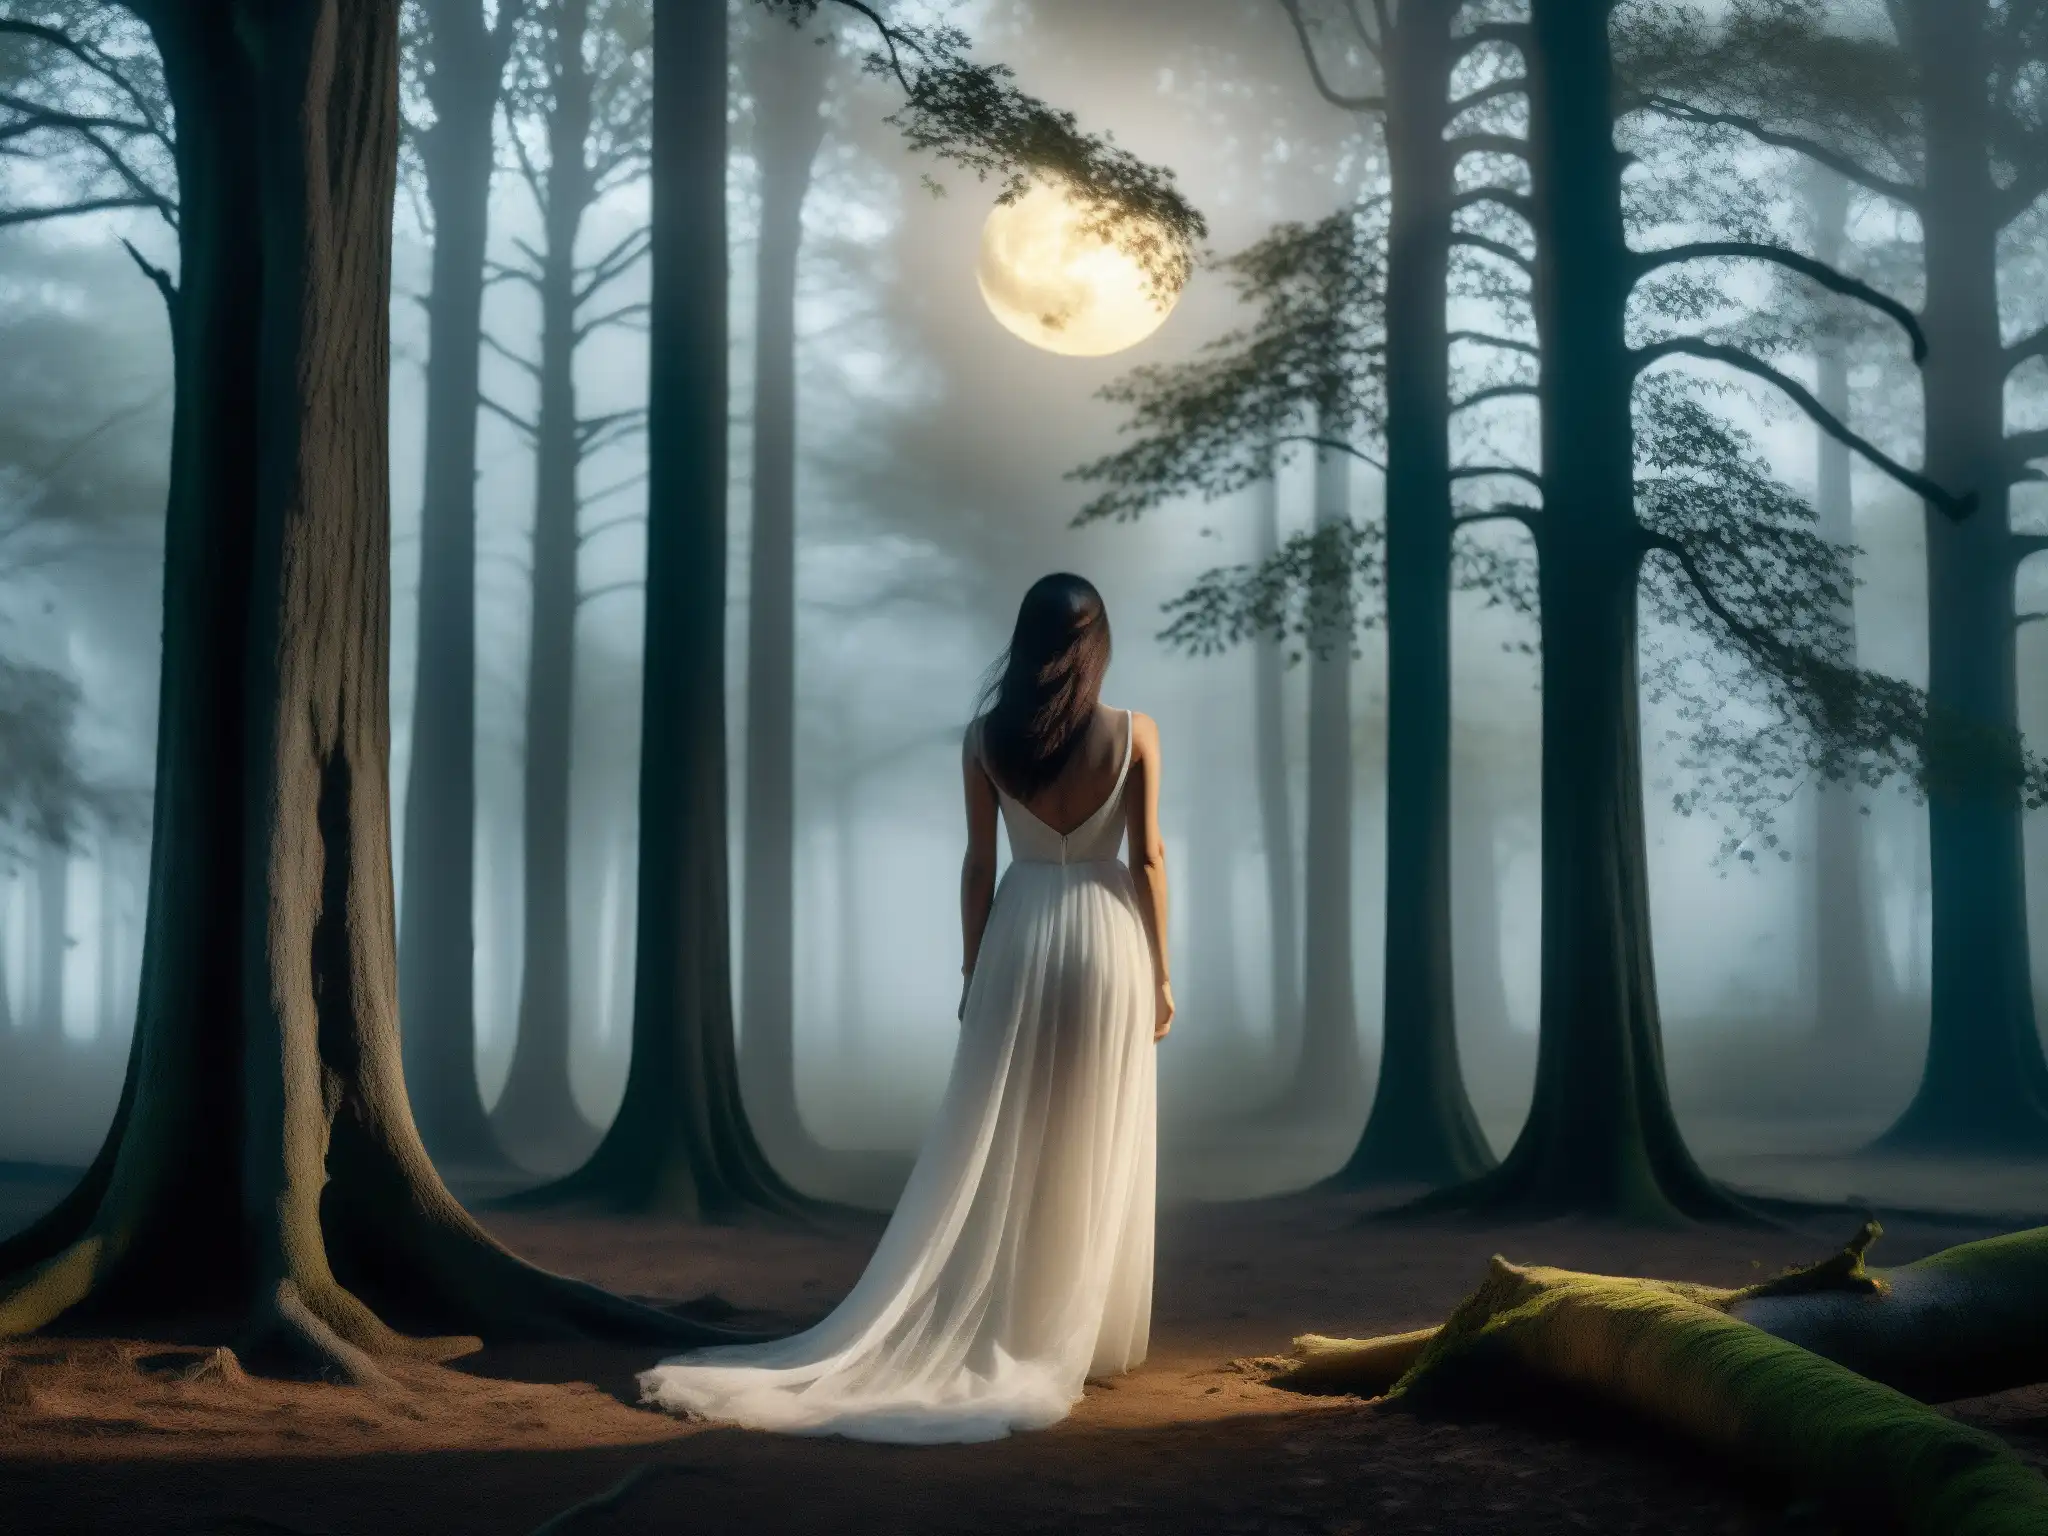 Dama de Blanco mito urbano: Figura misteriosa en el bosque nocturno, entre la niebla y árboles ancestrales